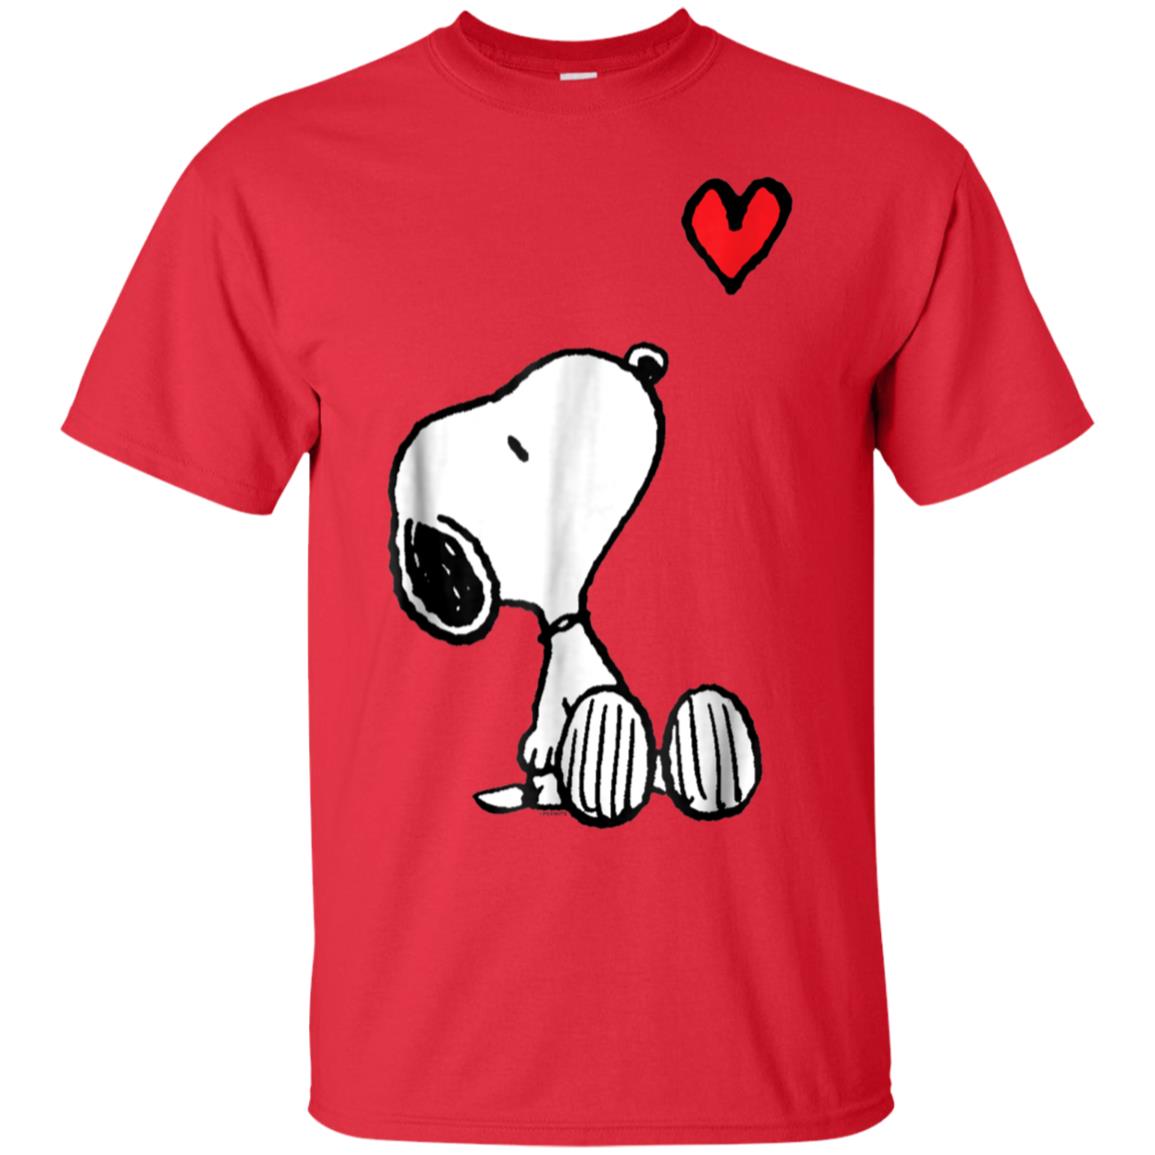 Peanuts Heart Sitting Snoopy T-Shirt - Love Art USA